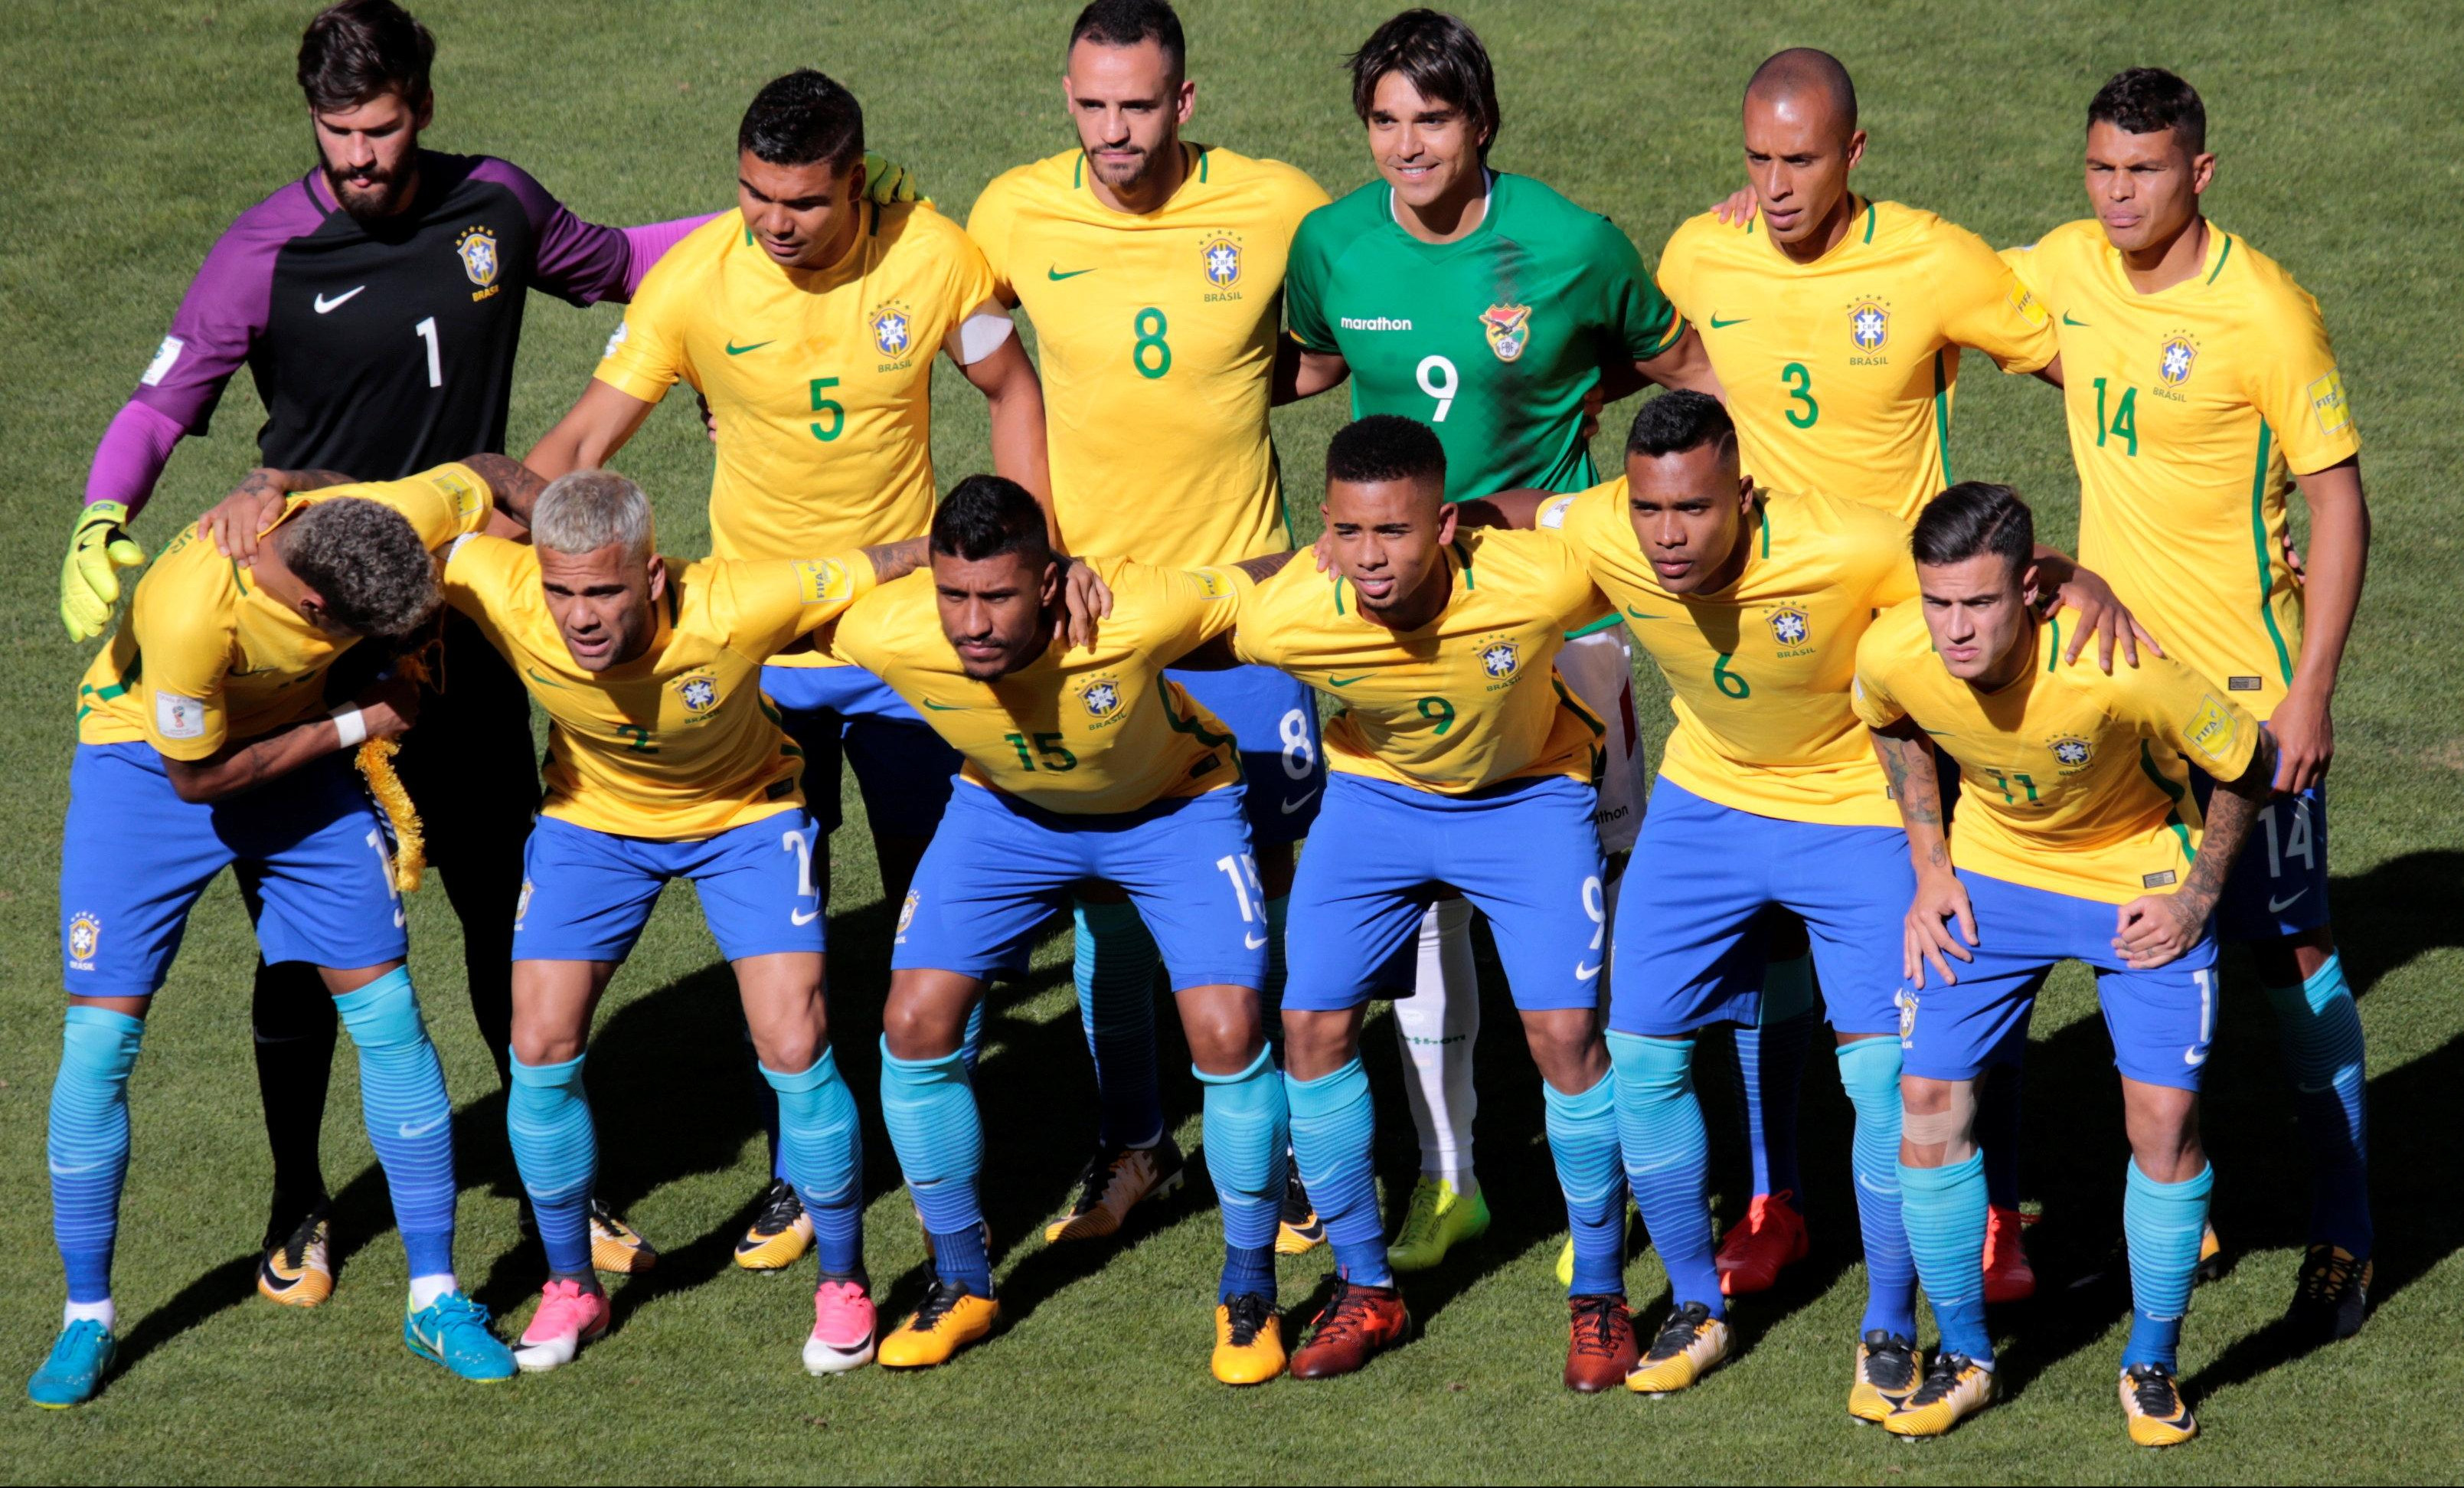 (FOTO) JE L' MOGU JA, JE L' MOGU JA!? Brazilci imaju uljeza u timu!